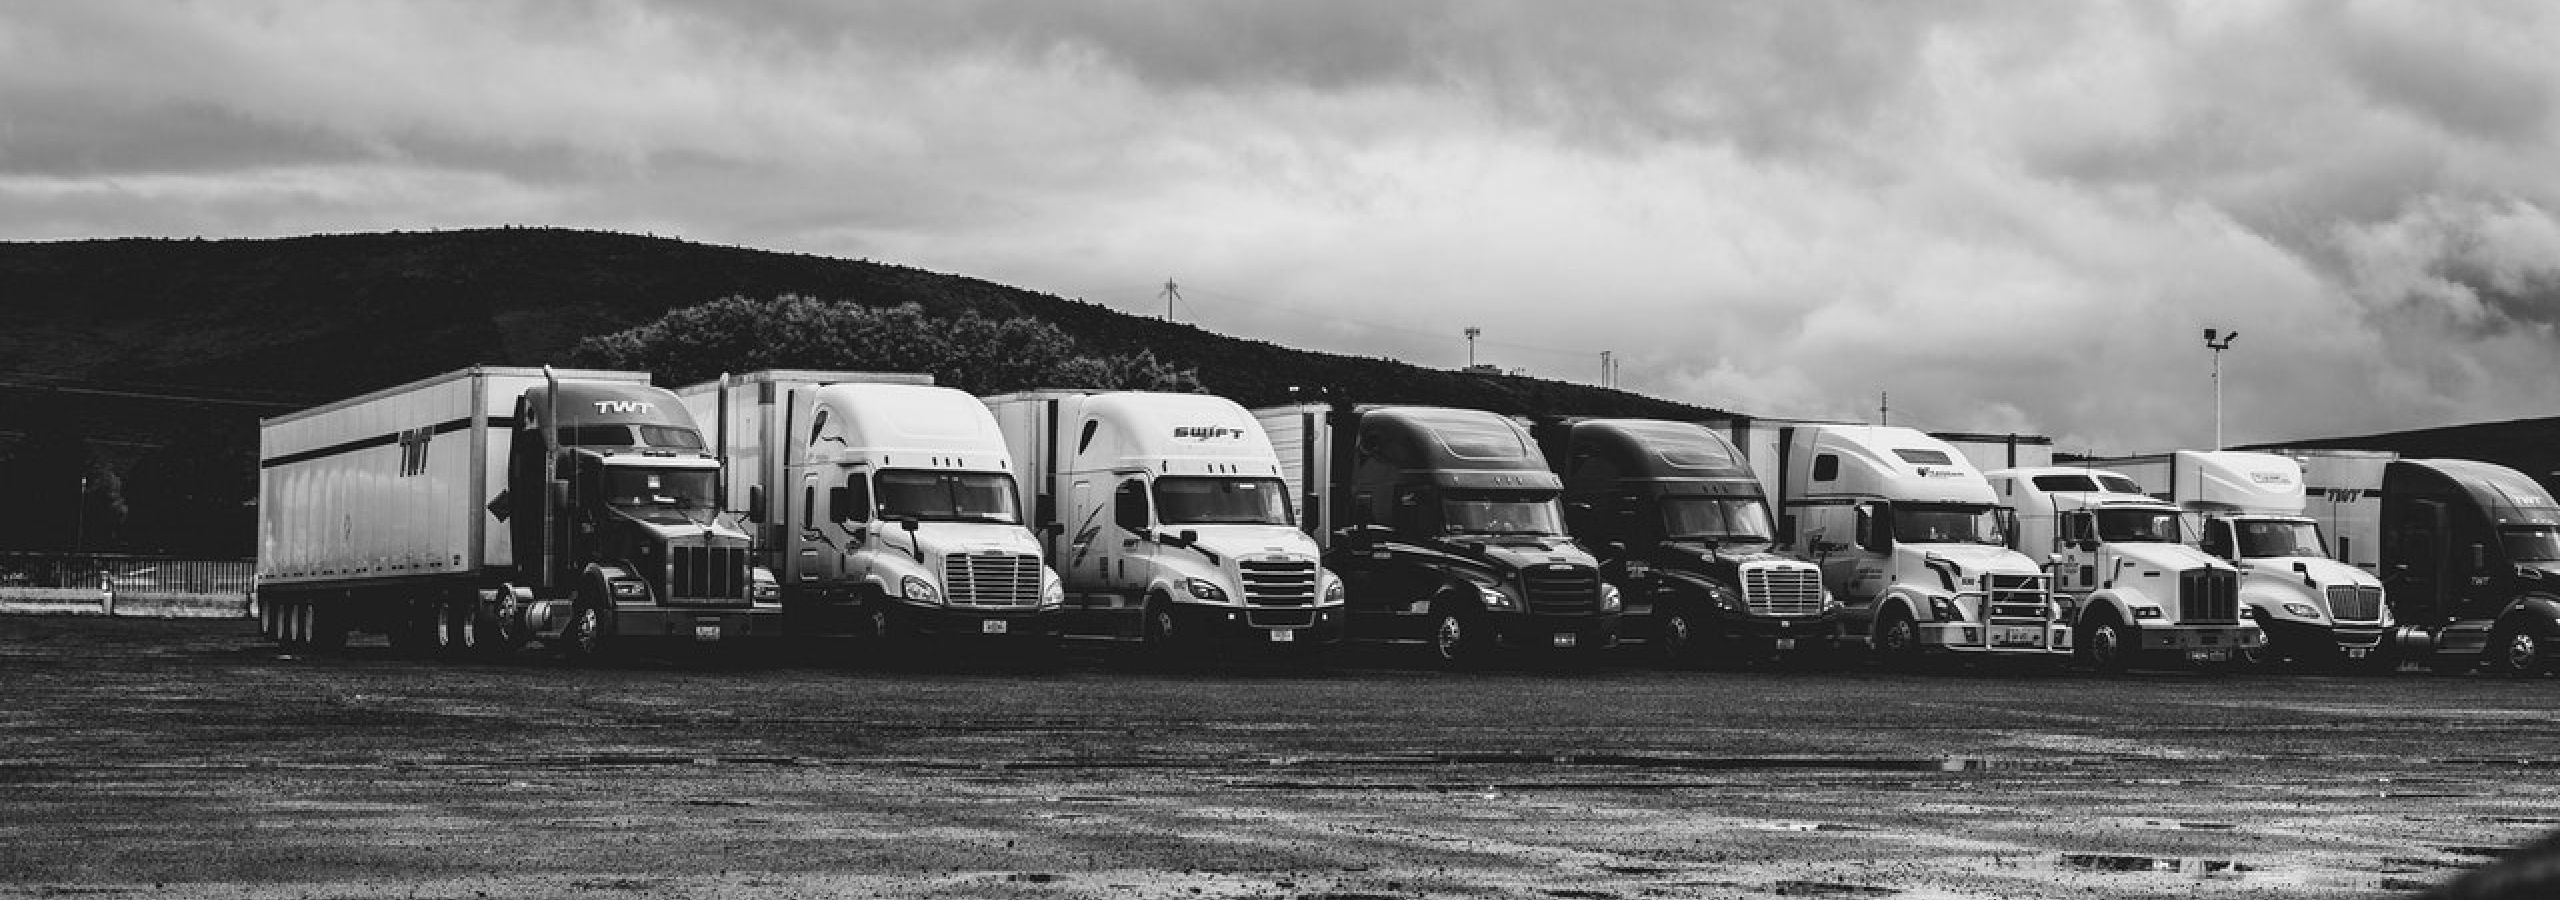 transport semi trucks